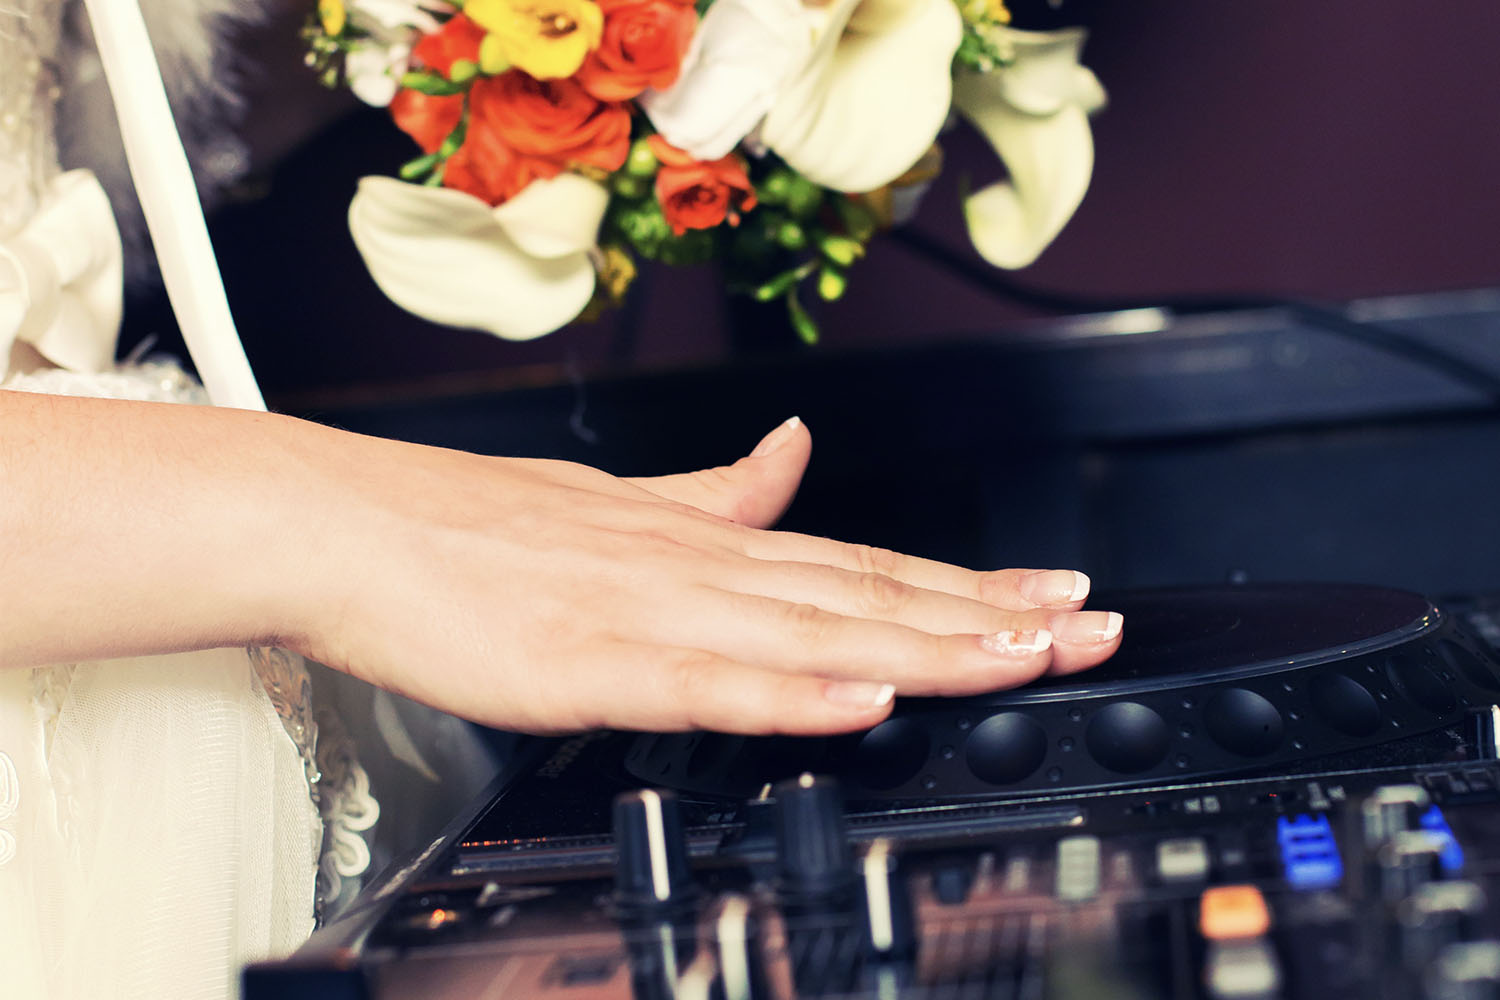 Featured image for “DJ, liveband eller Spotify på bröllopsfesten?”